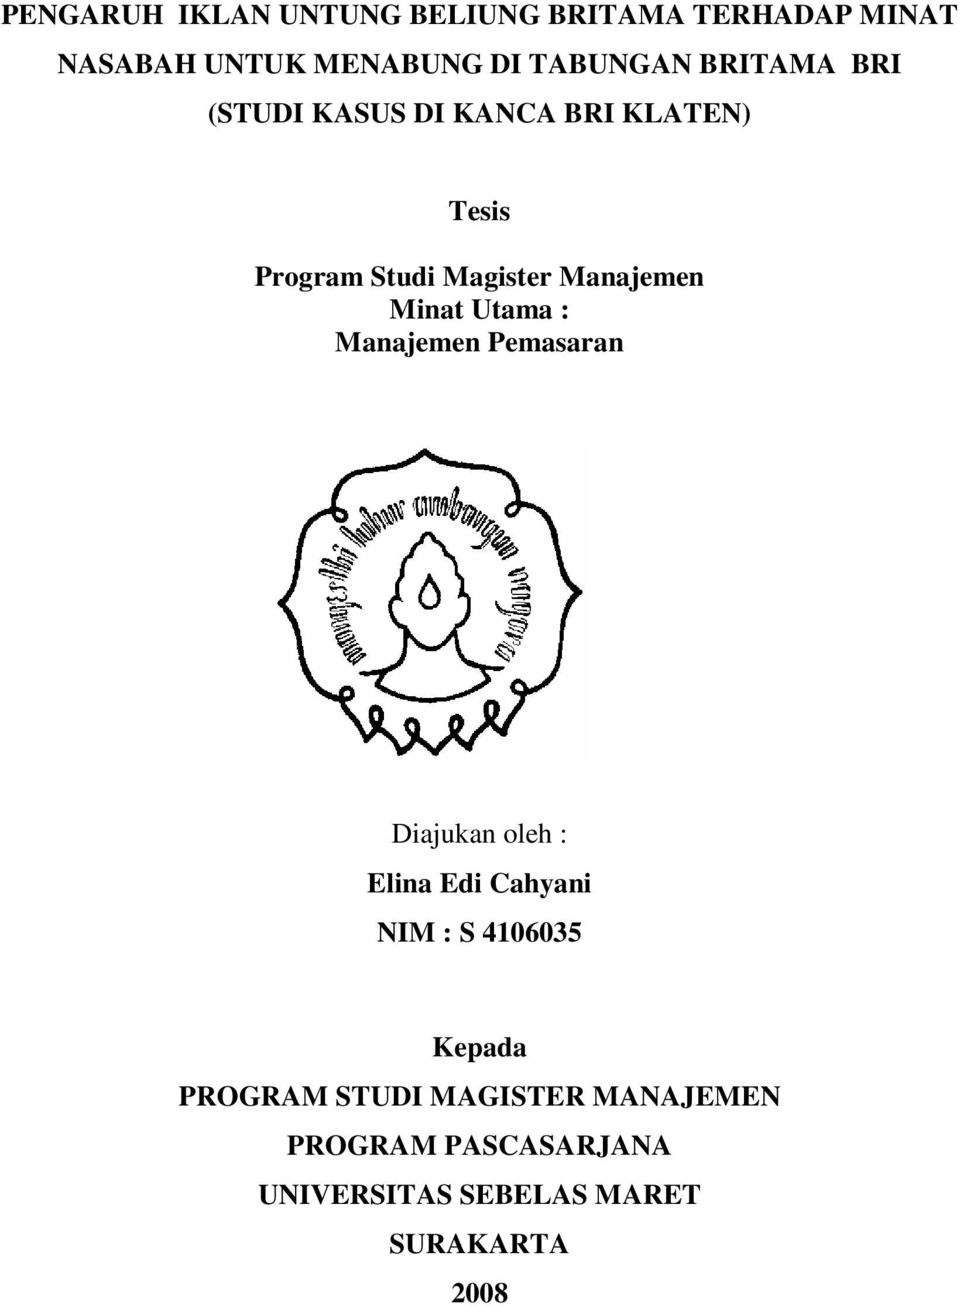 Proposal thesis manajemen keuangan